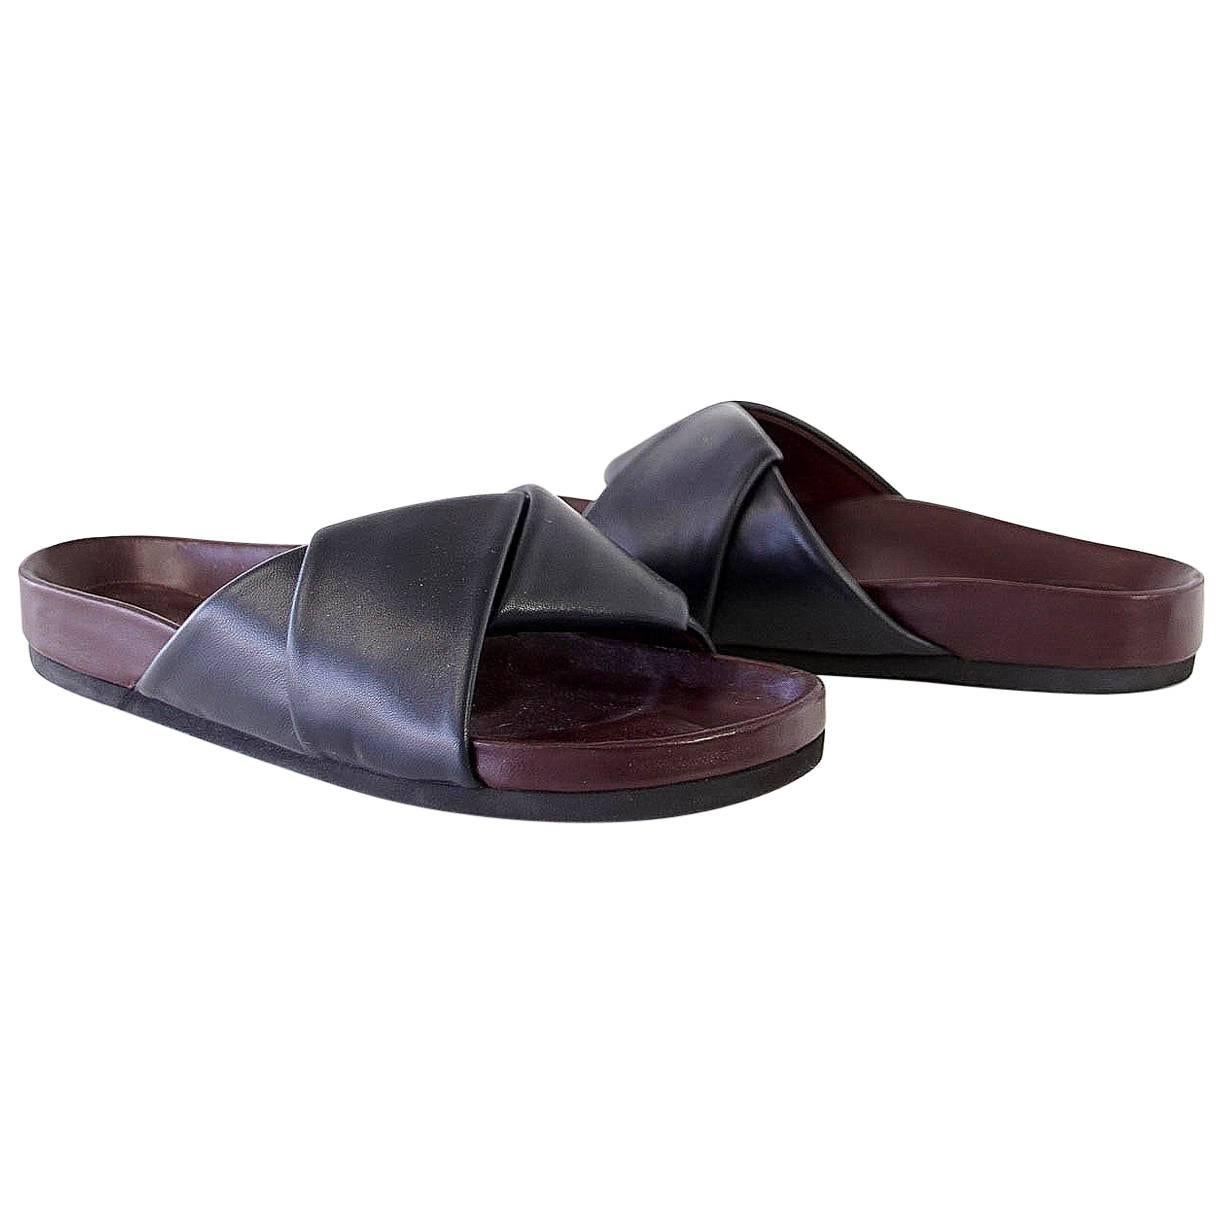 Celine Slides - For Sale on 1stDibs | slingback sandals, black flat 